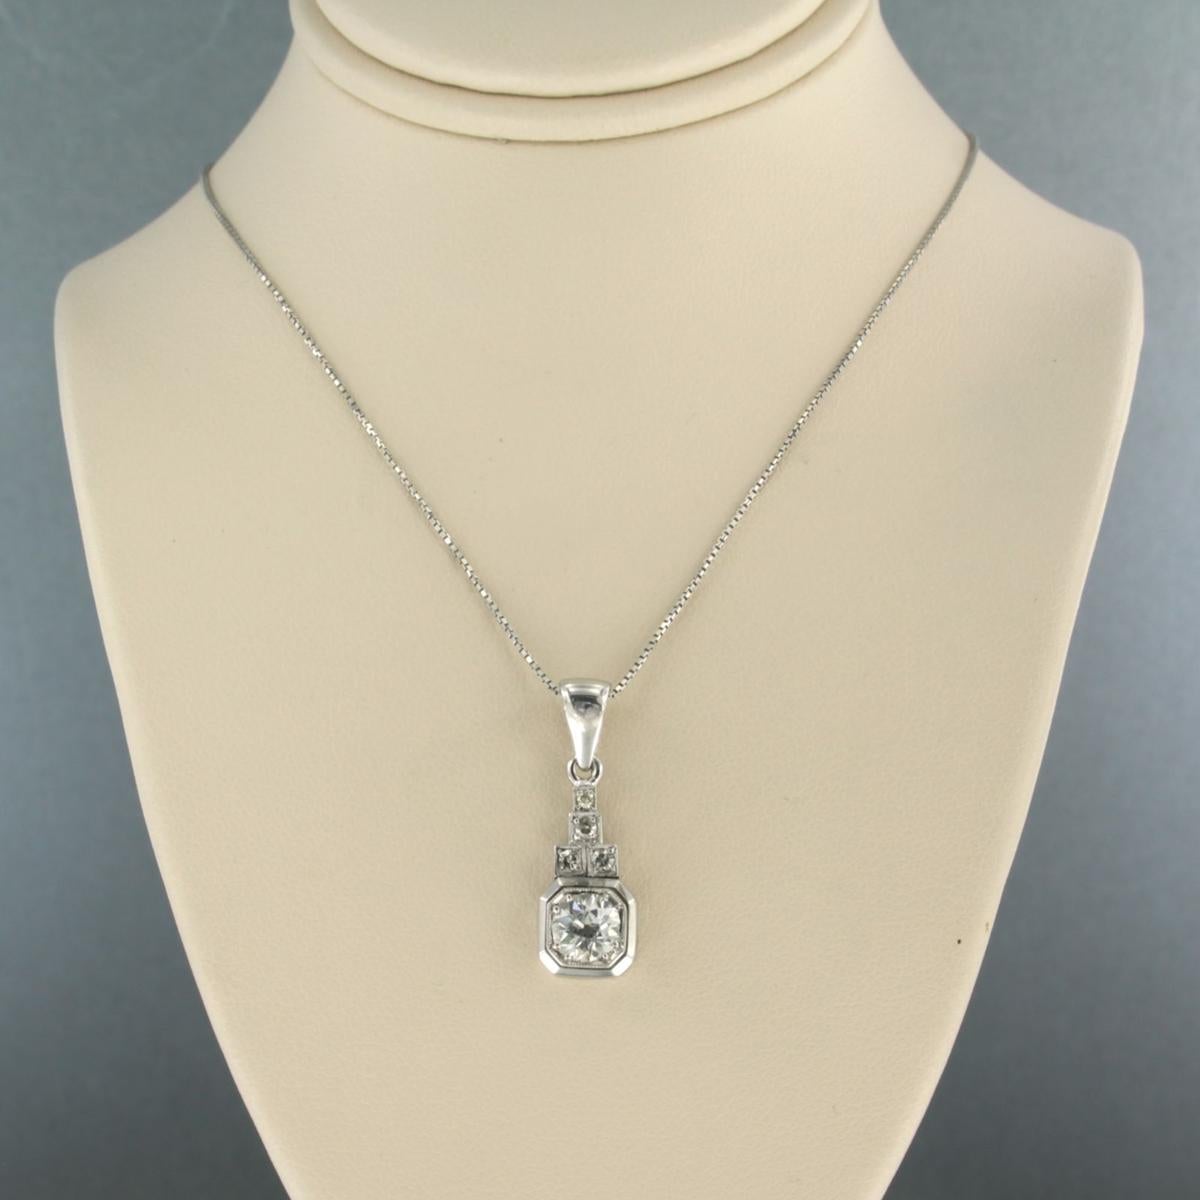 Collier en or blanc 18k avec pendentif serti de diamants de taille ancienne européenne et de diamants taille unique jusqu'à . 0,75ct - F/G - VS/SI - 45 cm de long

description détaillée :

Le collier mesure 45 cm de long et 0,8 mm de large.

Le